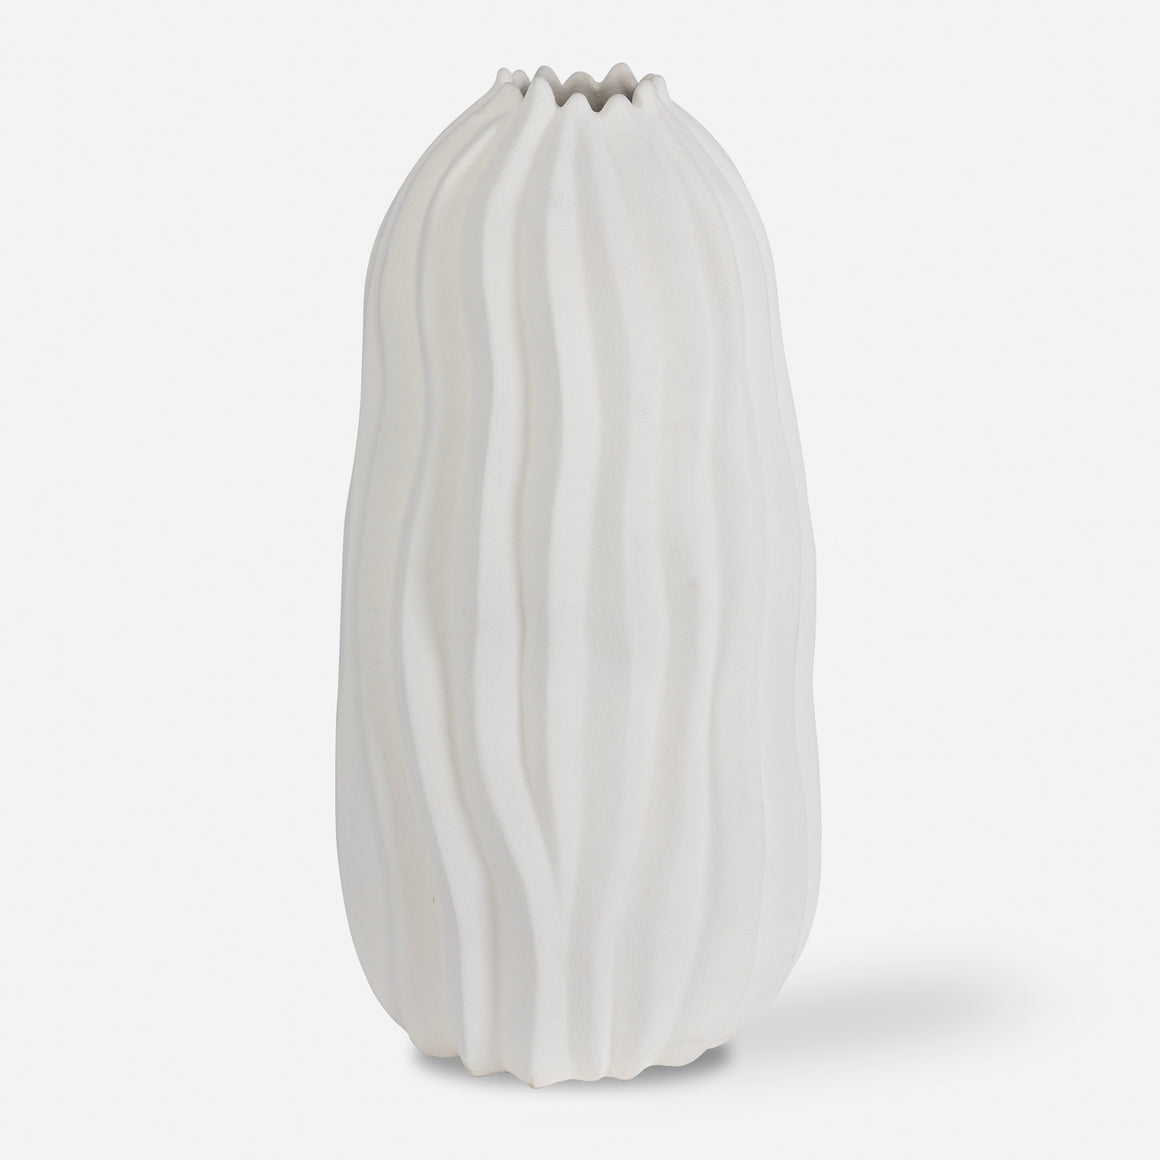 Merritt White Floor Vase